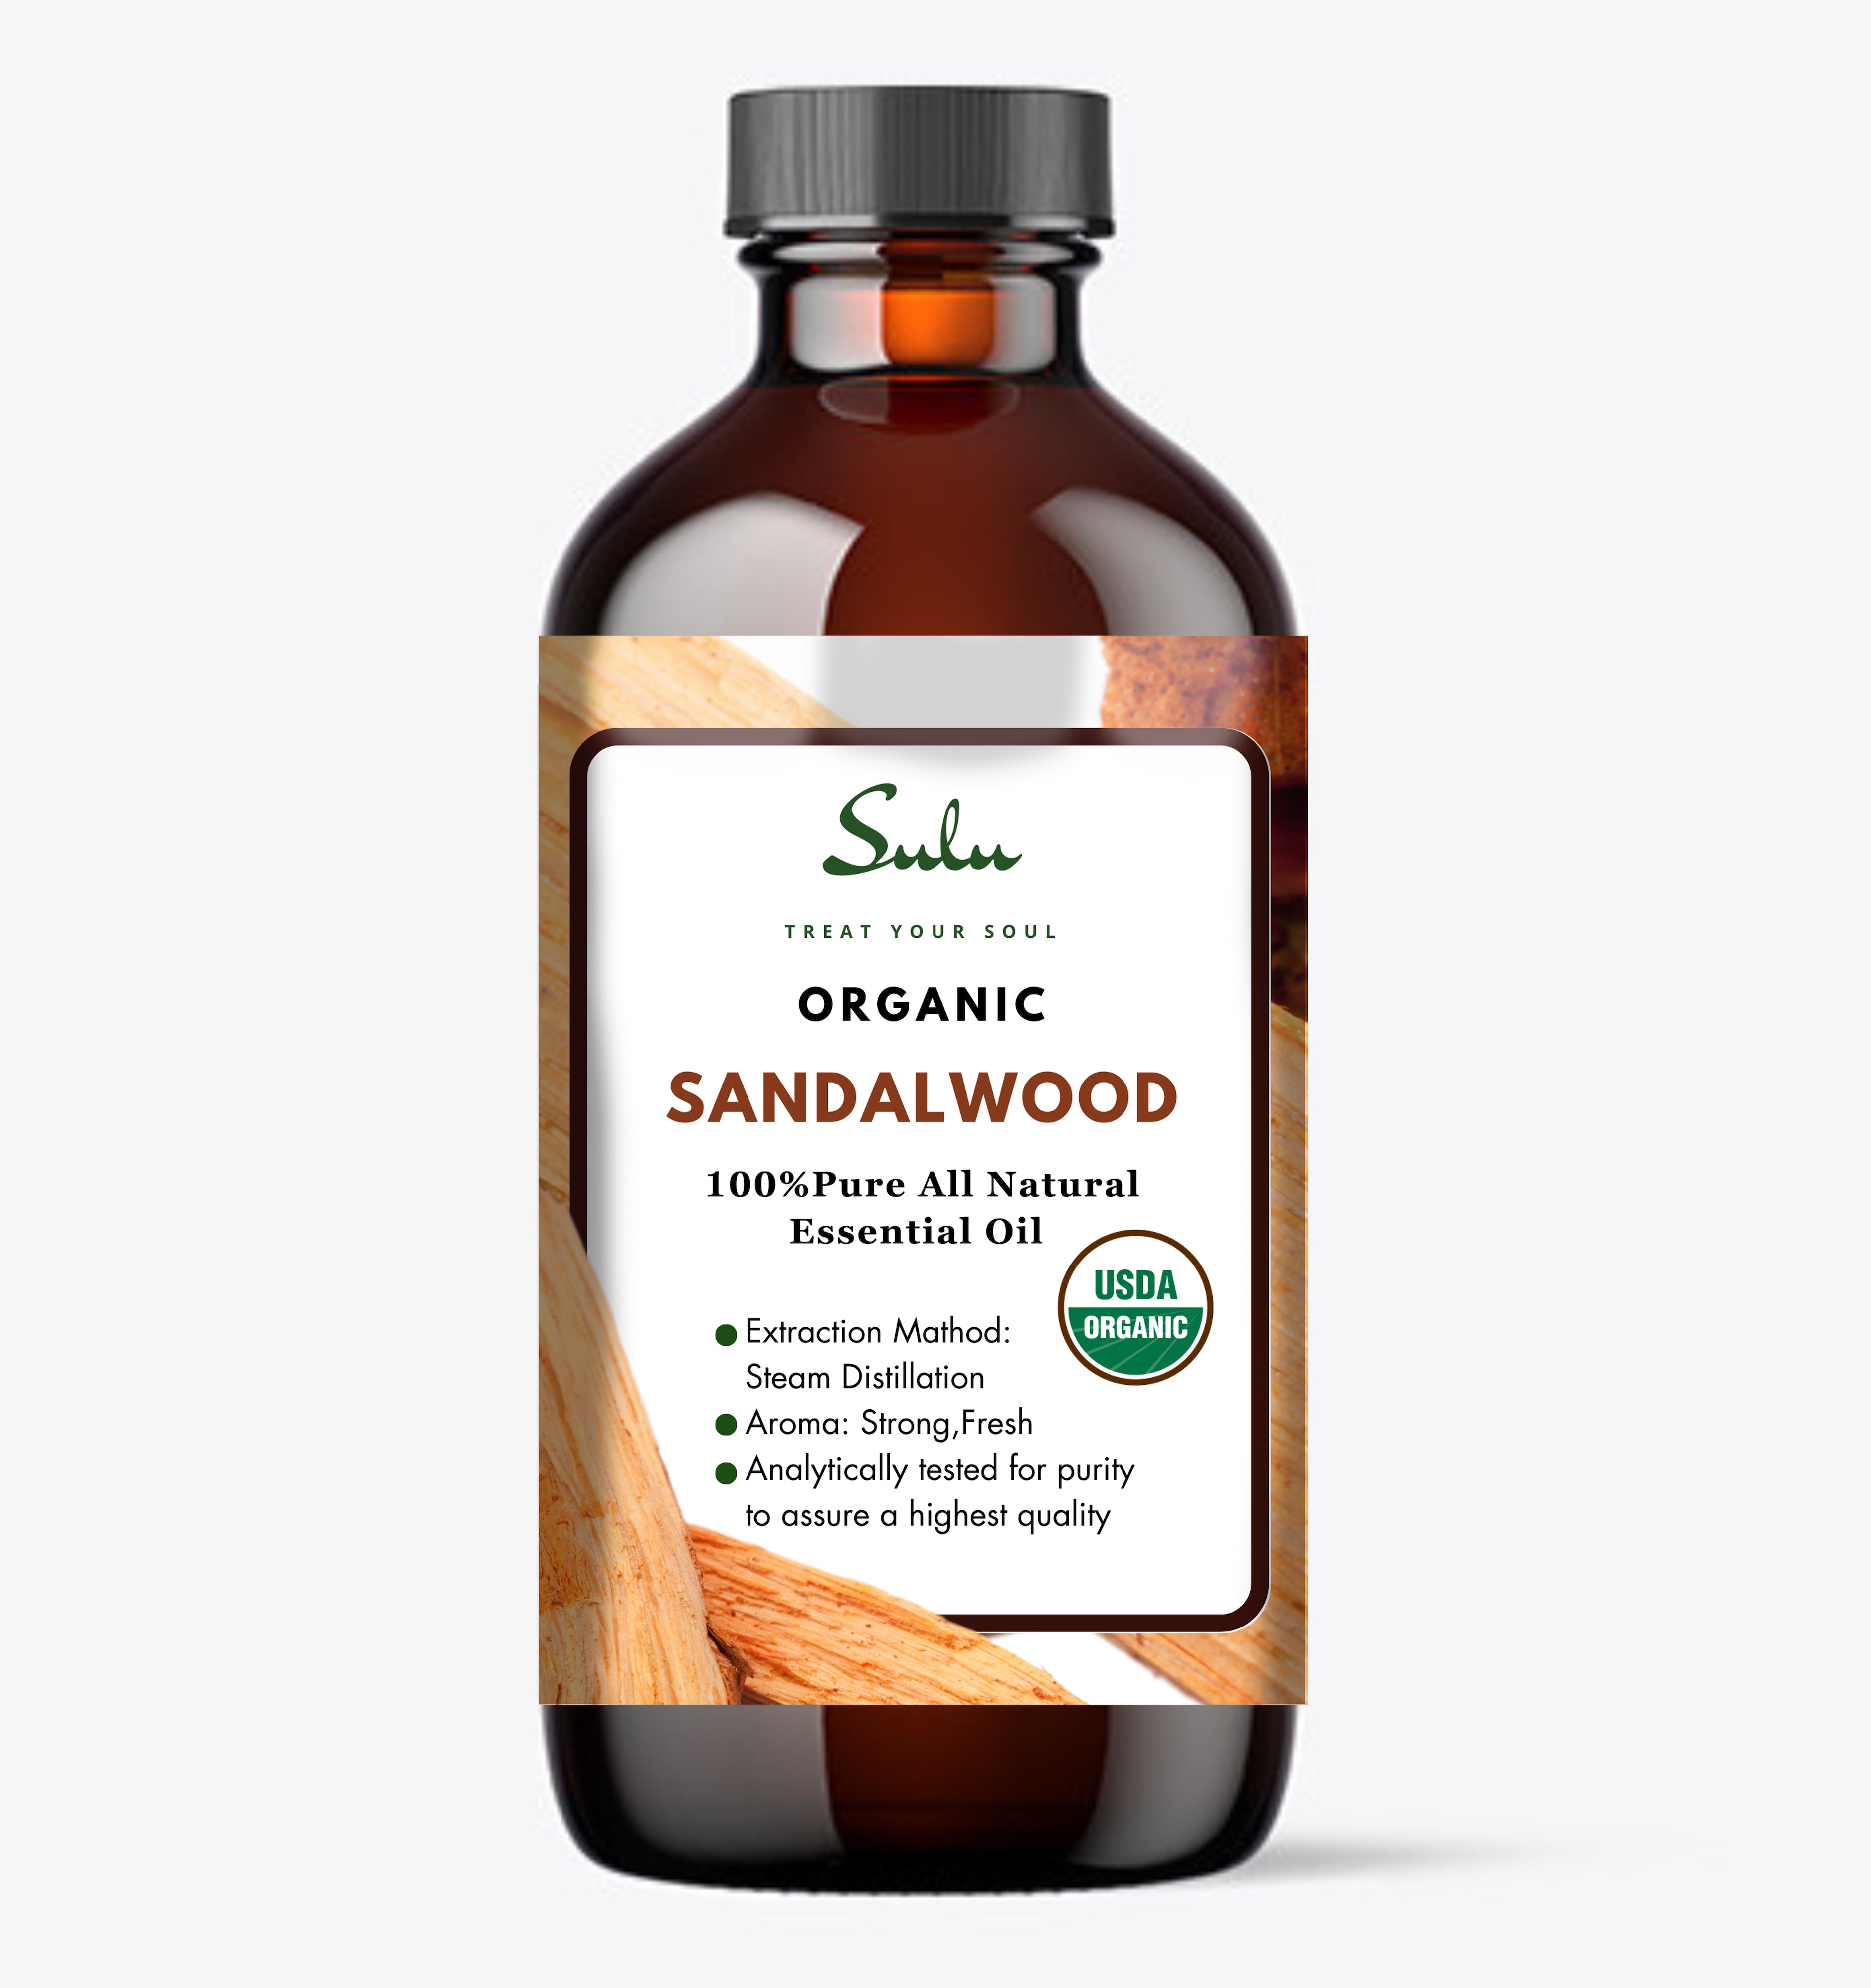 Mysore Sandalwood Essential Oil (Santalum Album). 100% Pure and natural.